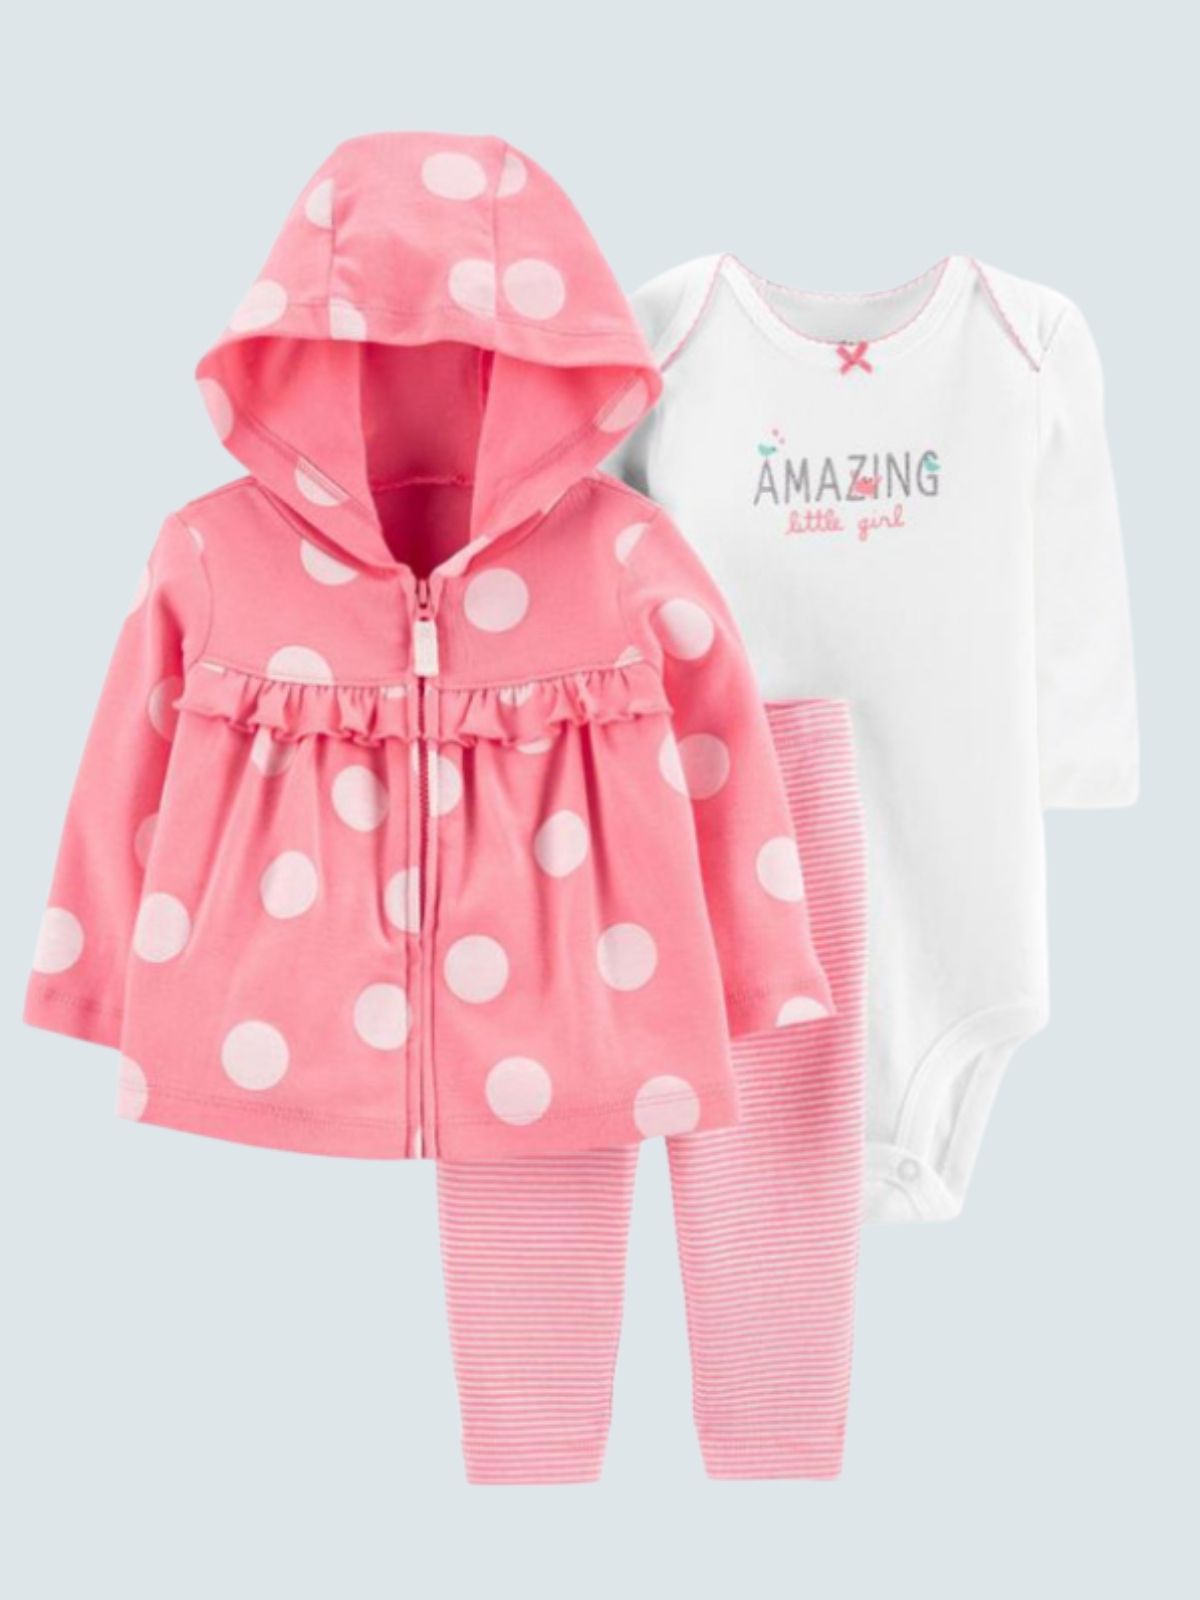 Baby 'Amazing Little Girl' Long Sleeve Onesie, Hooded Jacket, and Legging Set